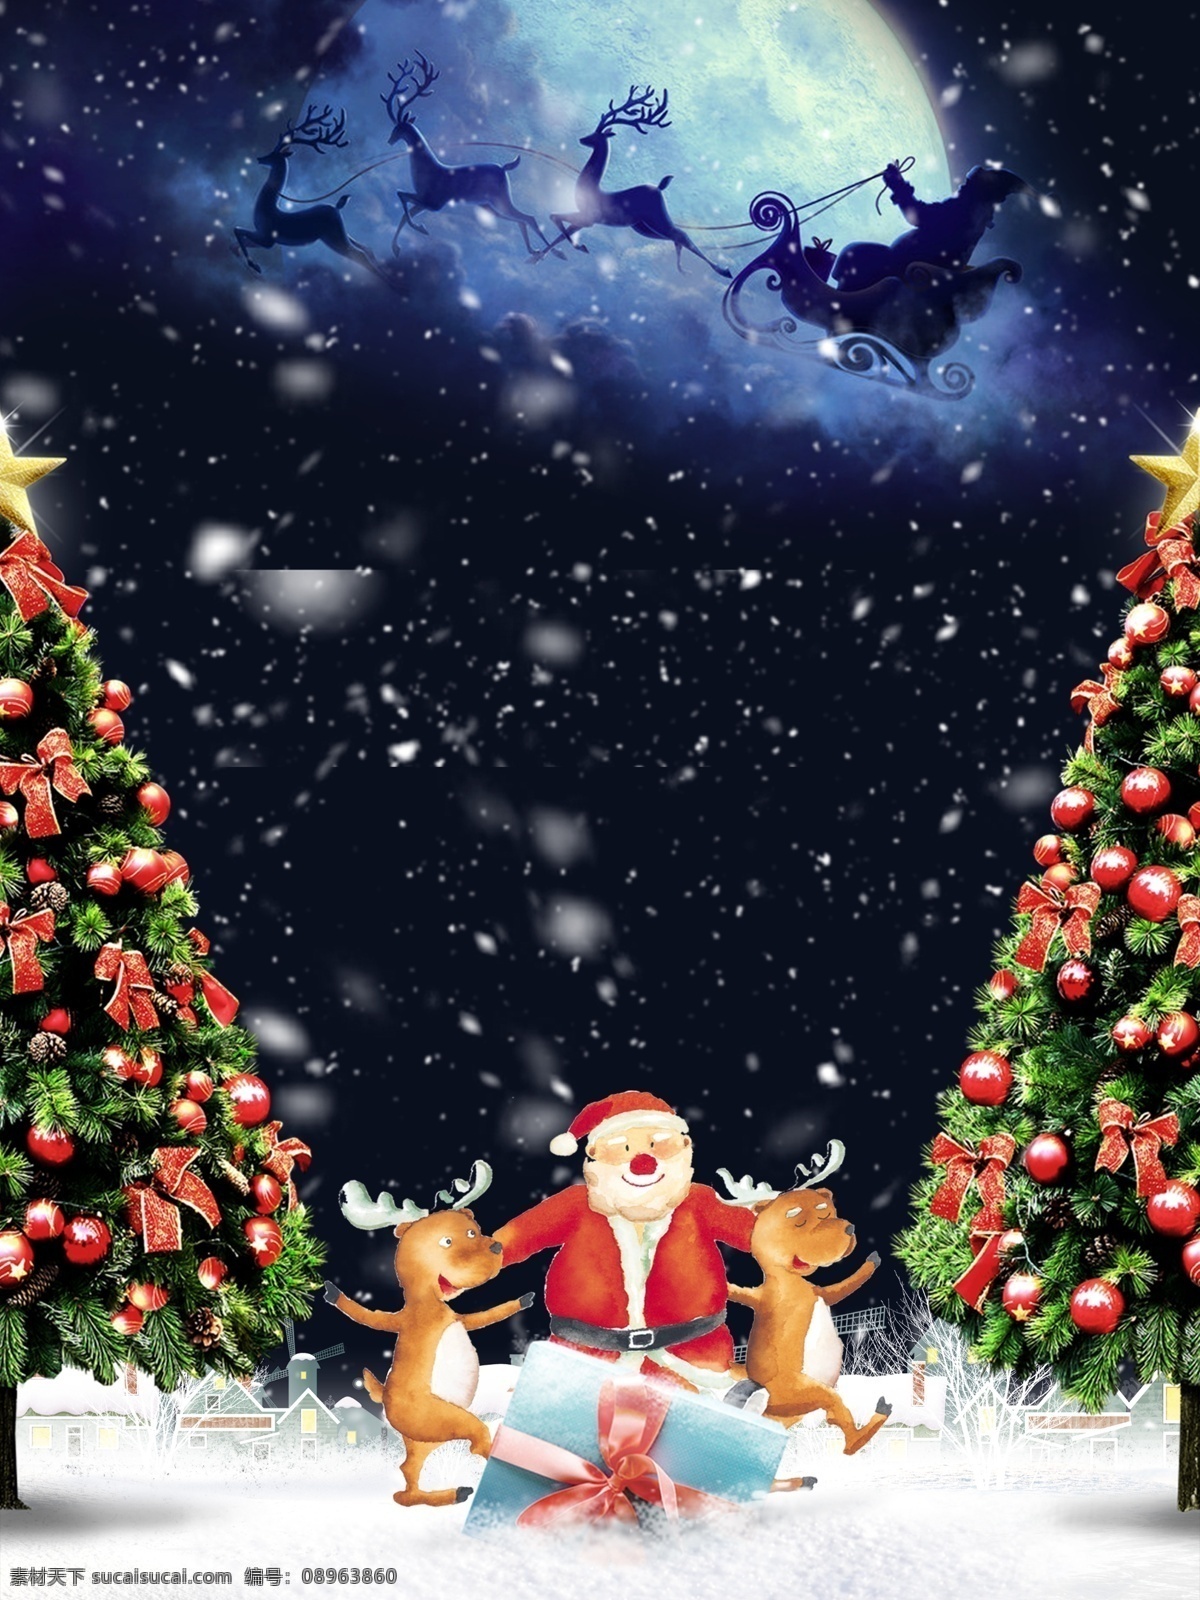 梦幻 圣诞节 平安夜 背景 唯美 马车 圣诞树 礼物 圣诞人 麋鹿 圣诞礼物 平安夜背景